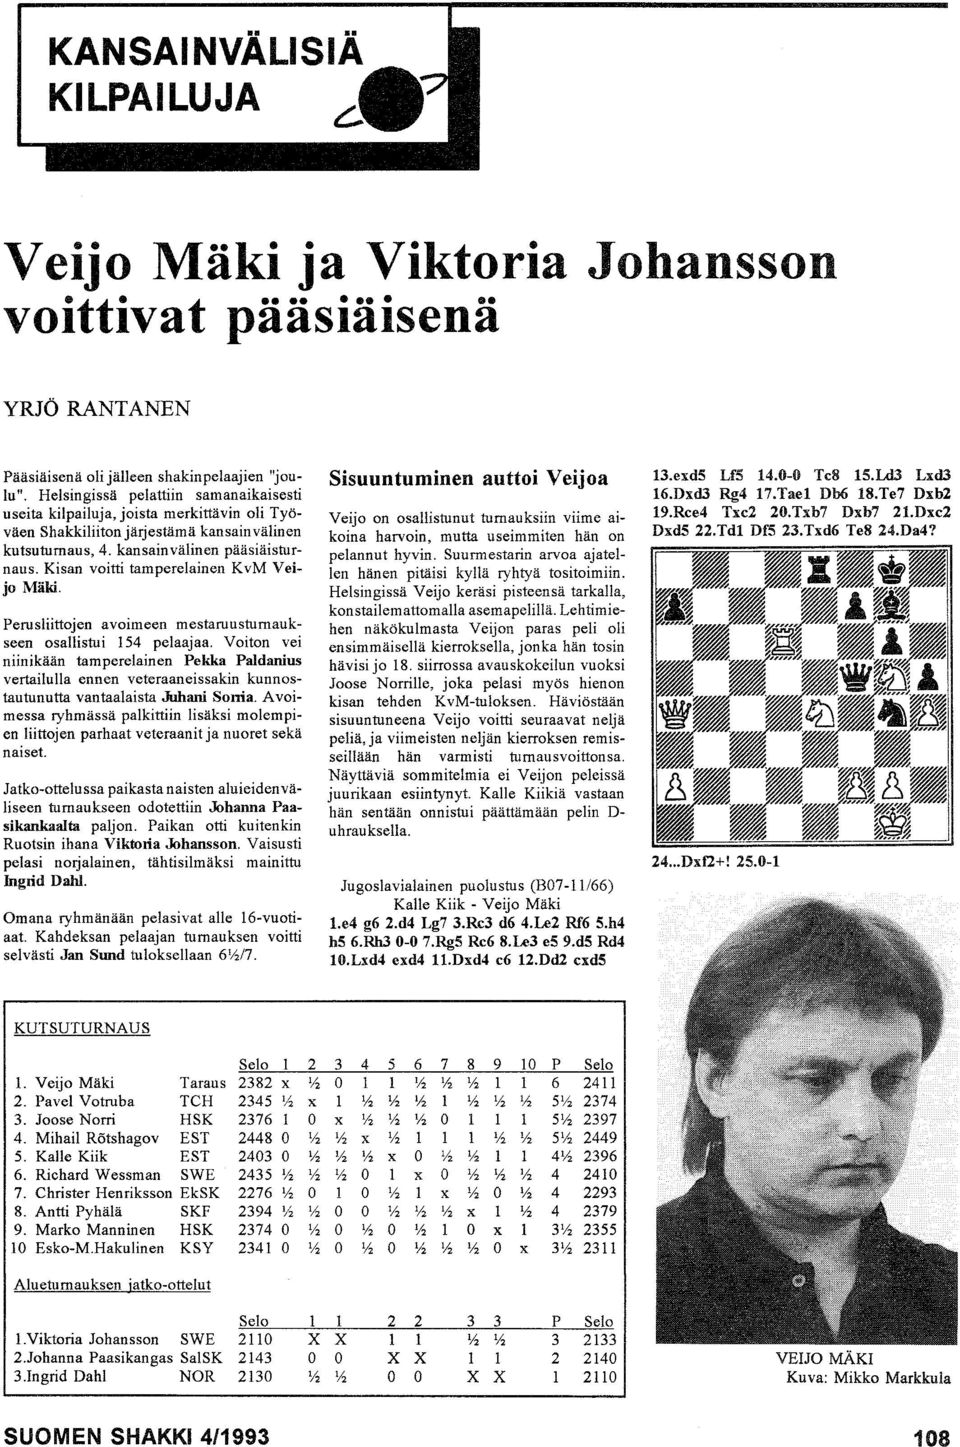 Kisan voitti tamperelainen KvM Veijo Mäki. Perusliittojen avoimeen mestaruusturnaukseen osallistui 154 pelaajaa.